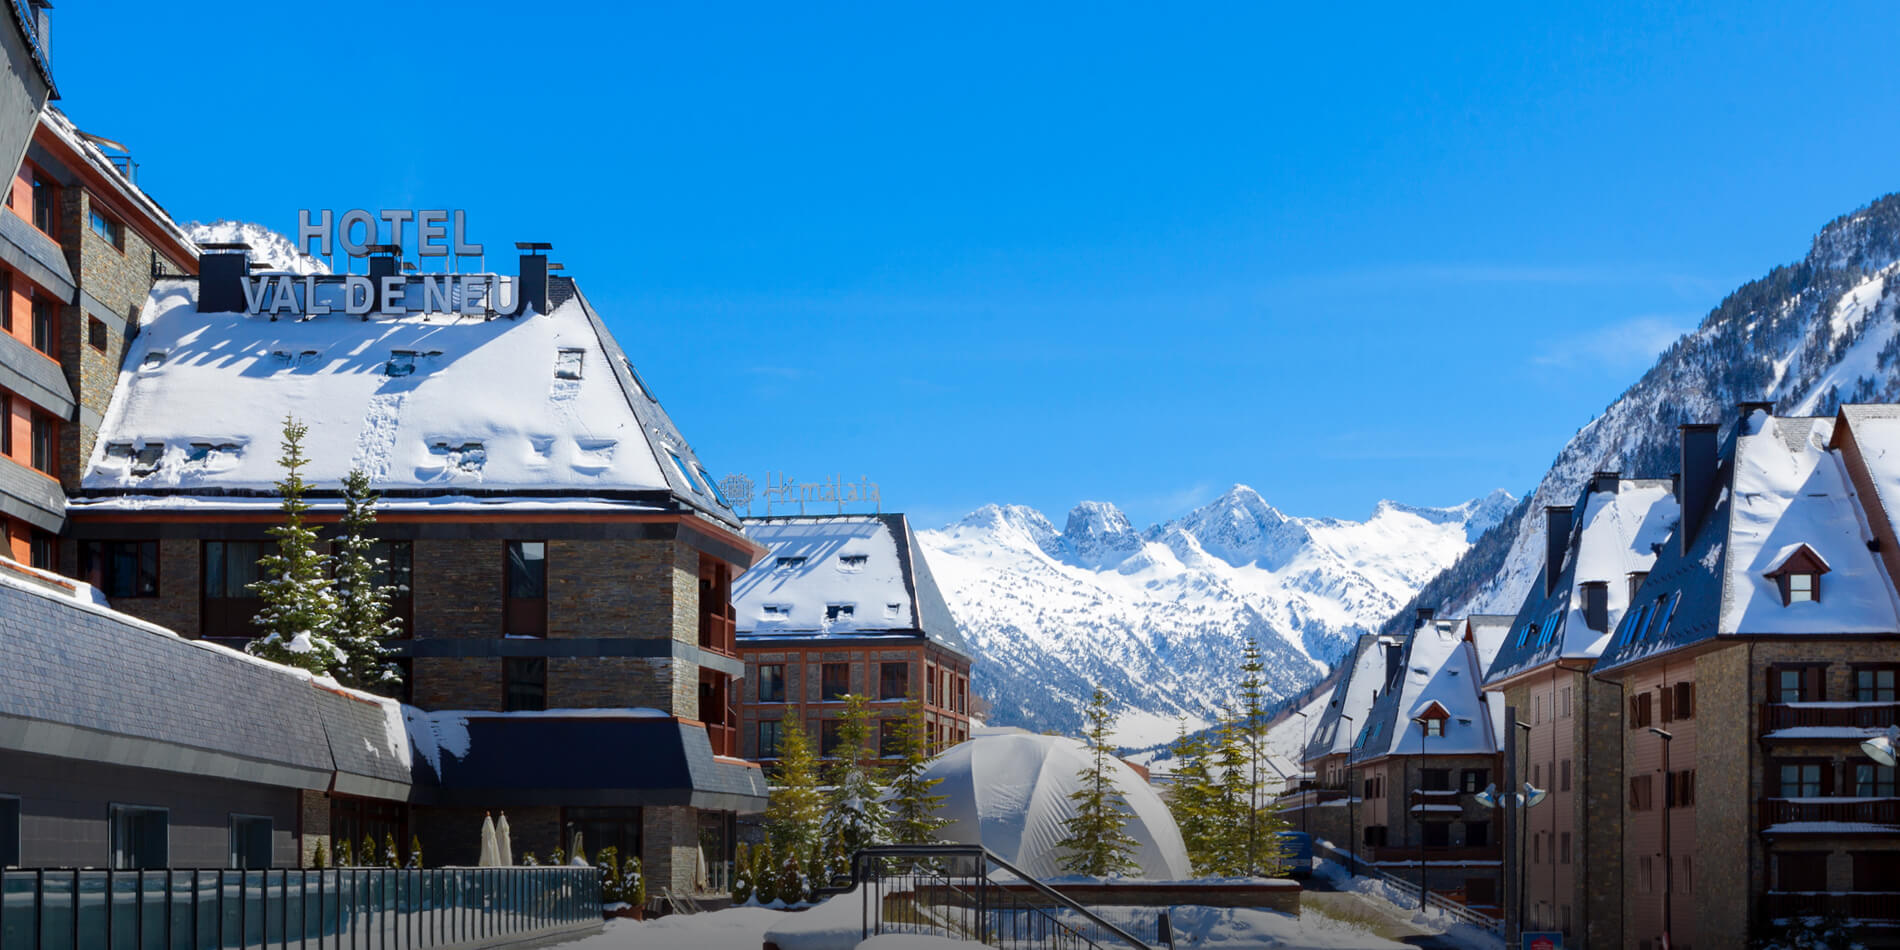 Val de Neu, el mejor hotel de esquí de España.